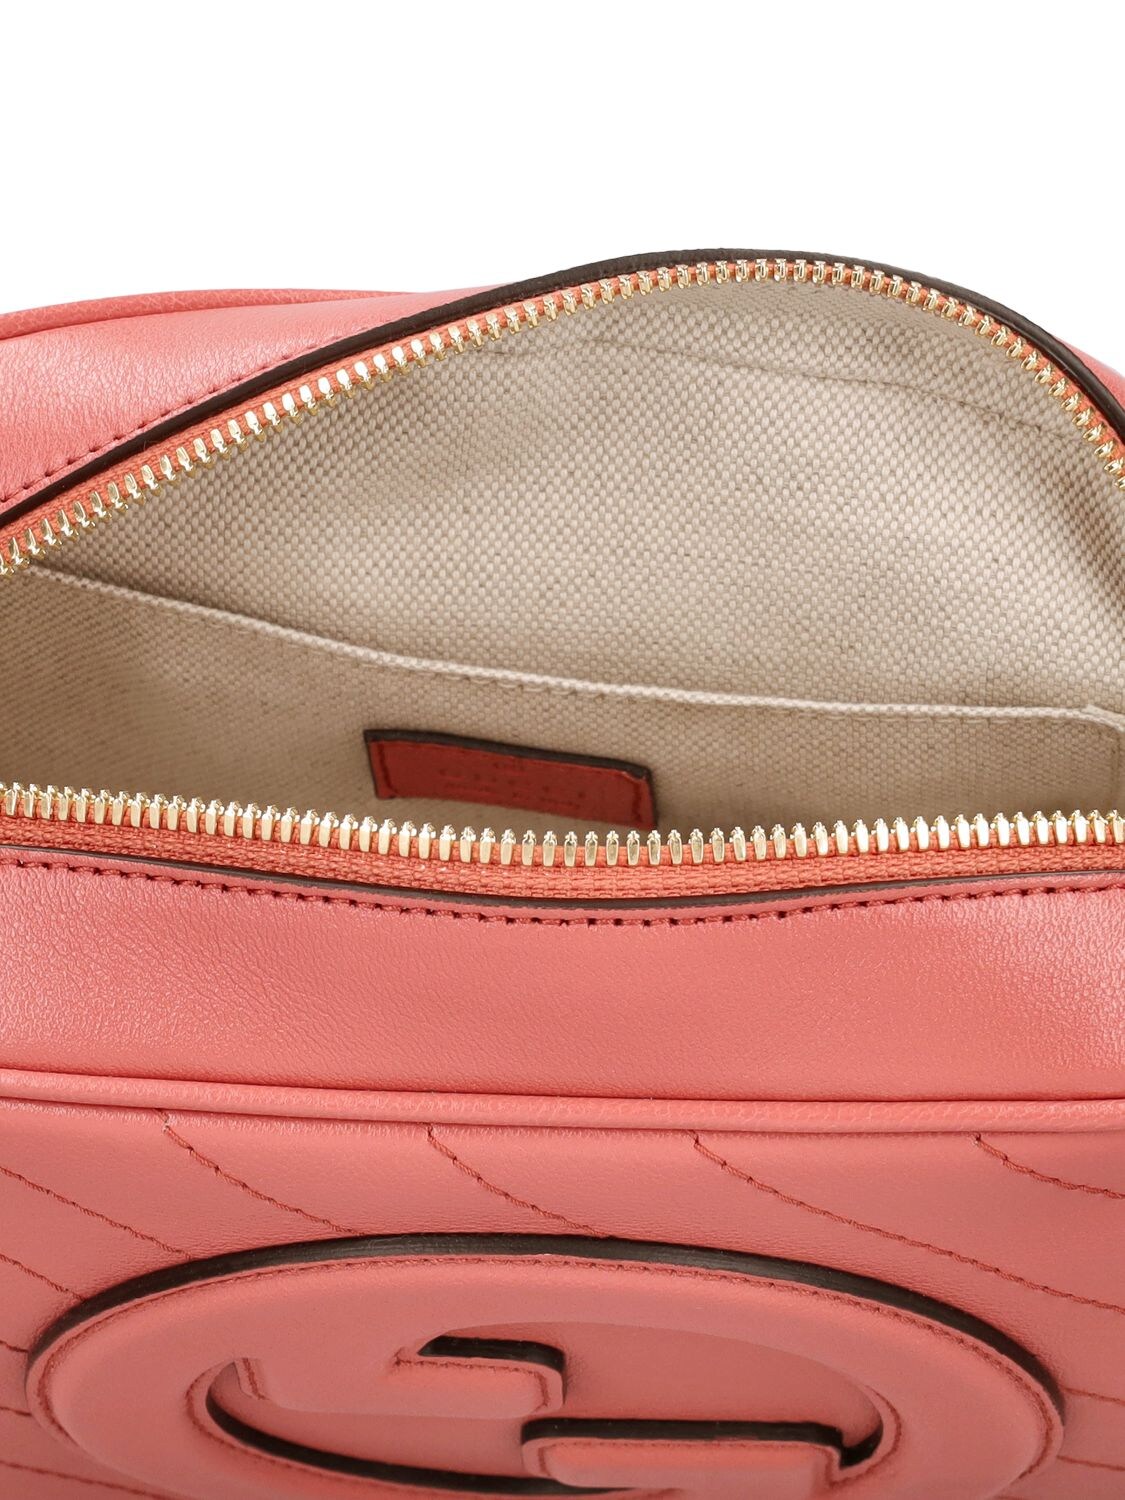 Shop Gucci Blondie Leather Shoulder Bag In Pink